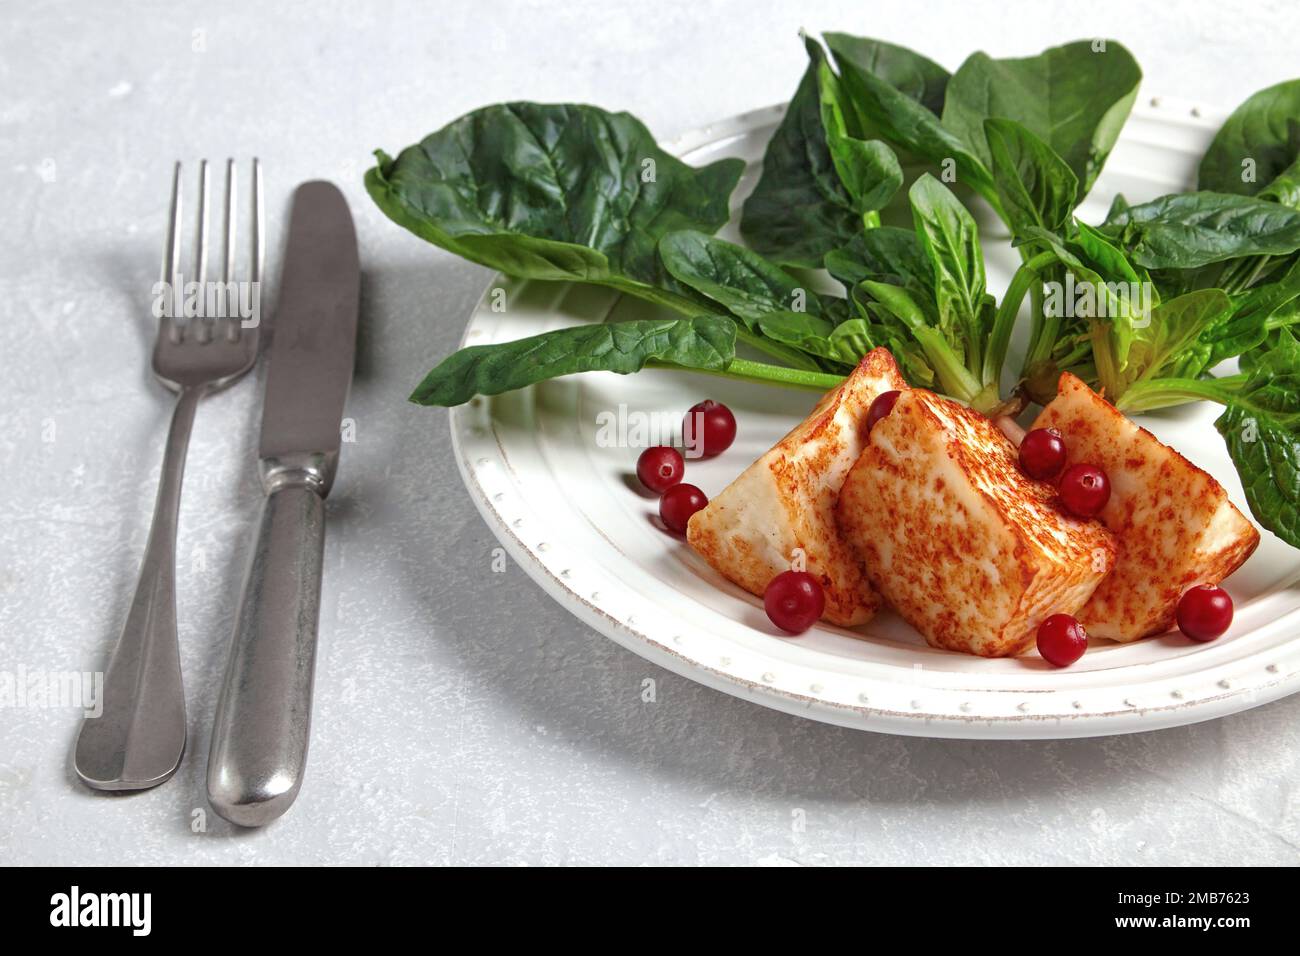 Mozzarella alloumi alla griglia con spinaci verdi e mirtilli rossi con posate Foto Stock